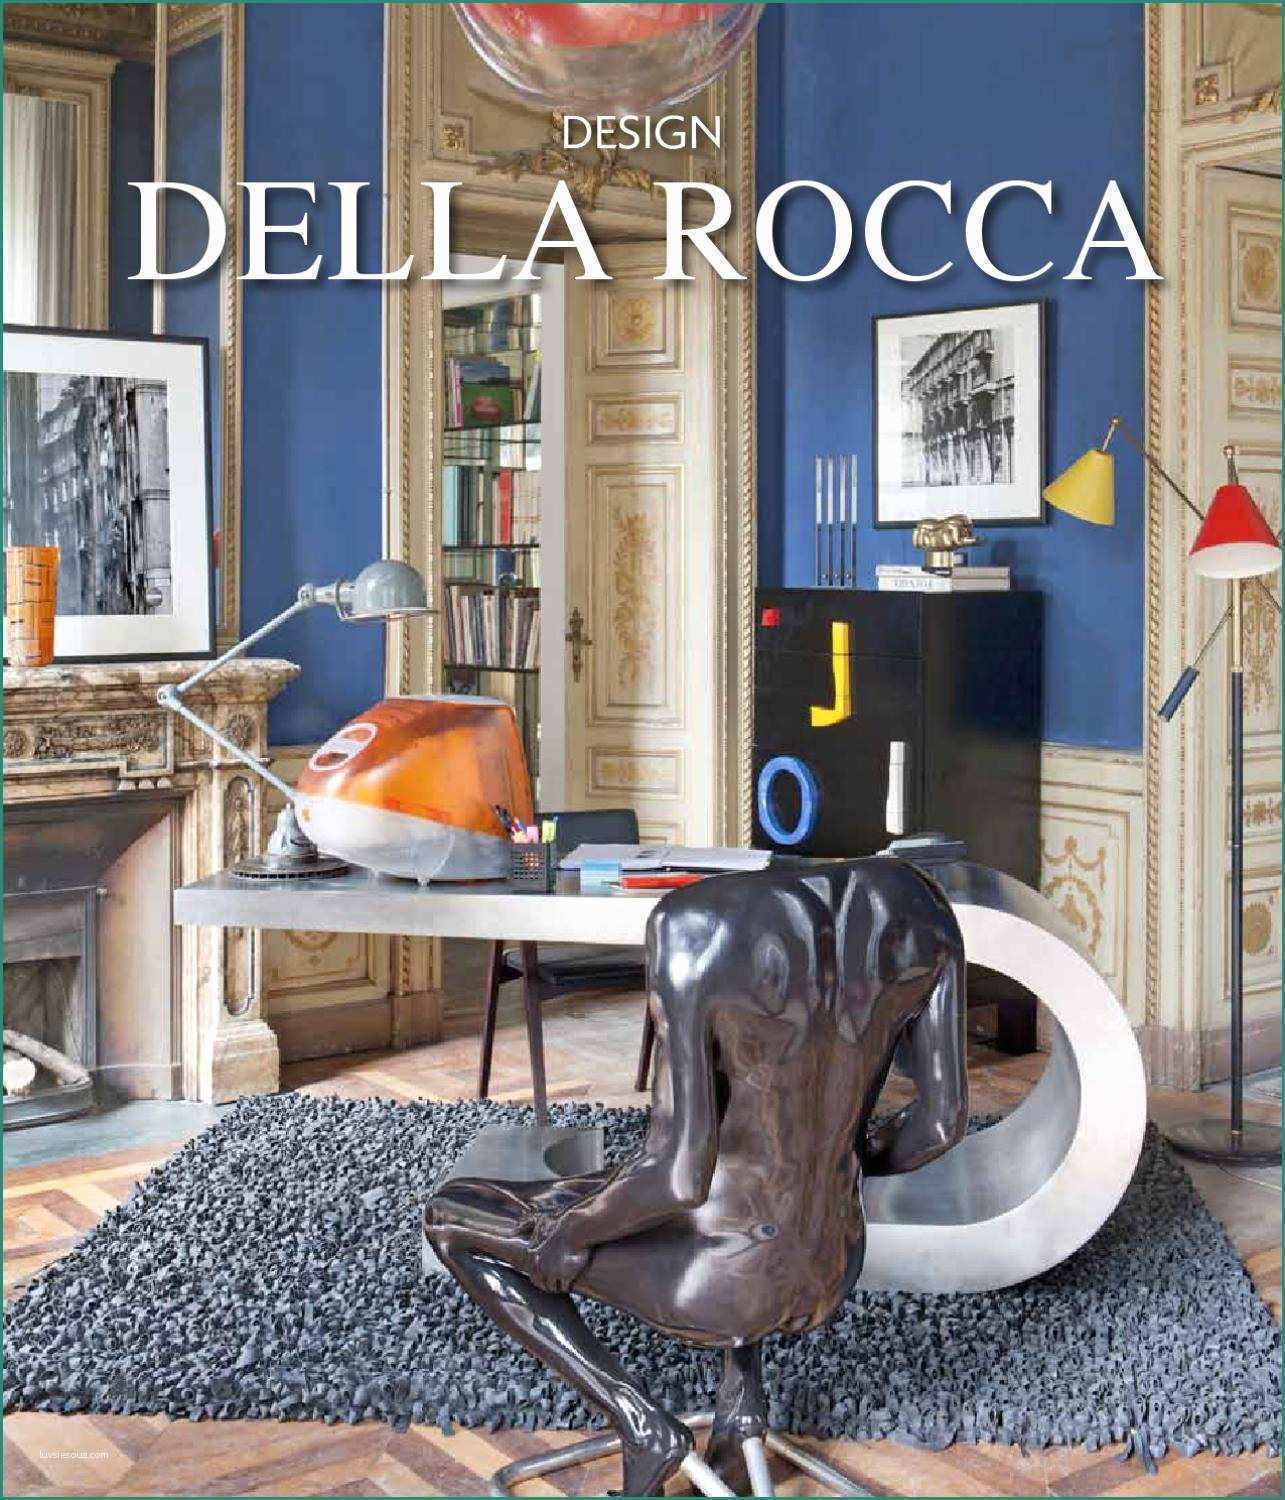 Pareti Divisorie In Plexiglass Per Interni E Design Della Rocca by andrea sosso issuu